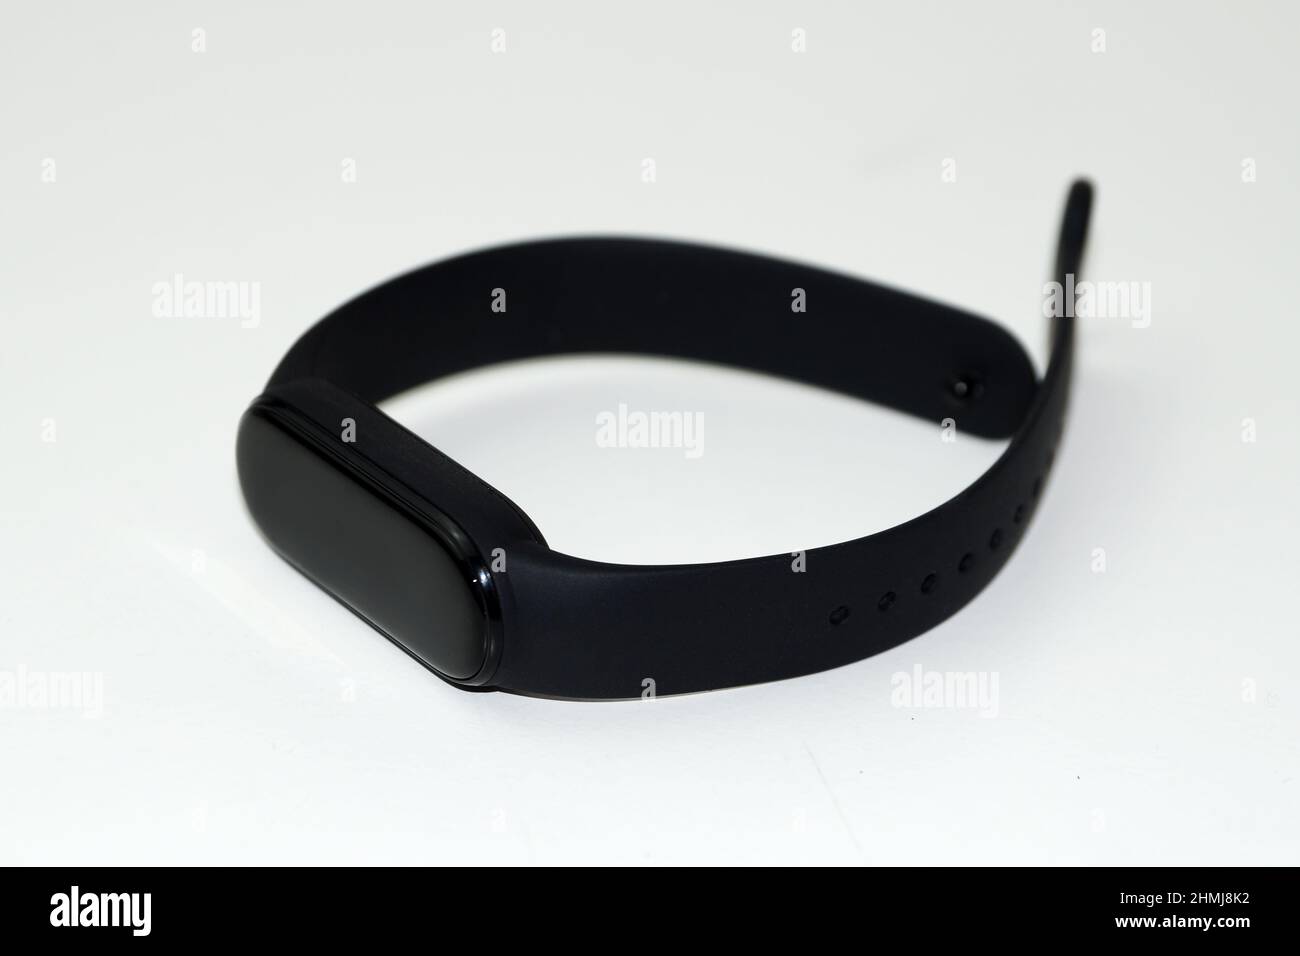 black fitness bracelet on a white background close-up. Stock Photo